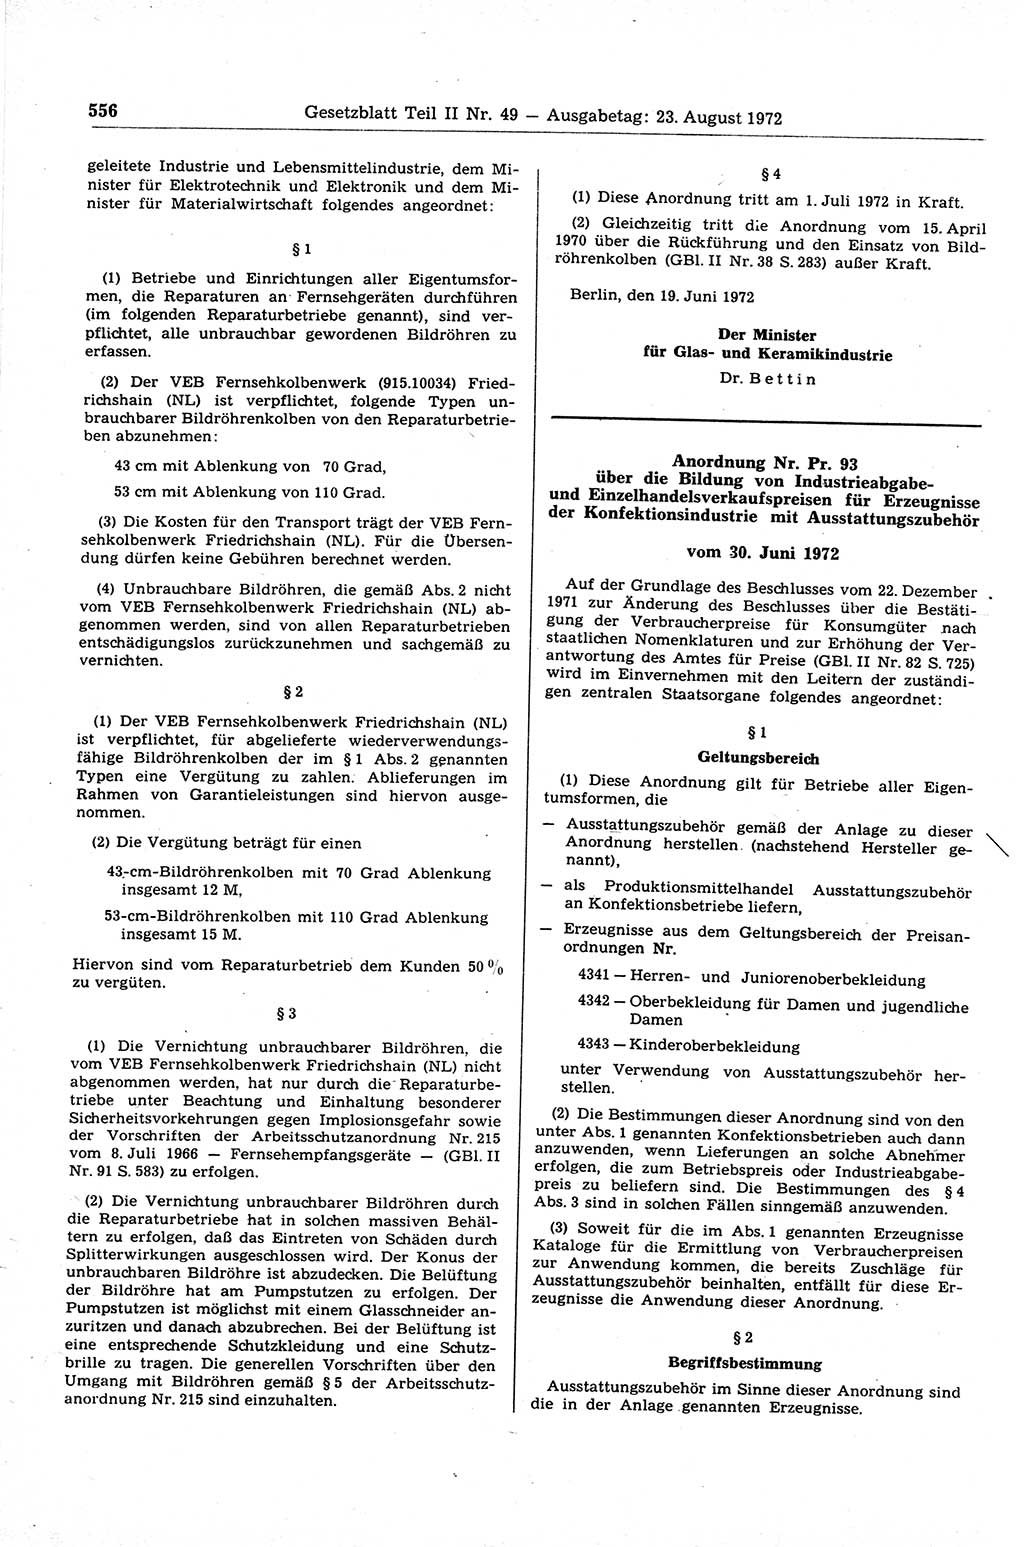 Gesetzblatt (GBl.) der Deutschen Demokratischen Republik (DDR) Teil ⅠⅠ 1972, Seite 556 (GBl. DDR ⅠⅠ 1972, S. 556)